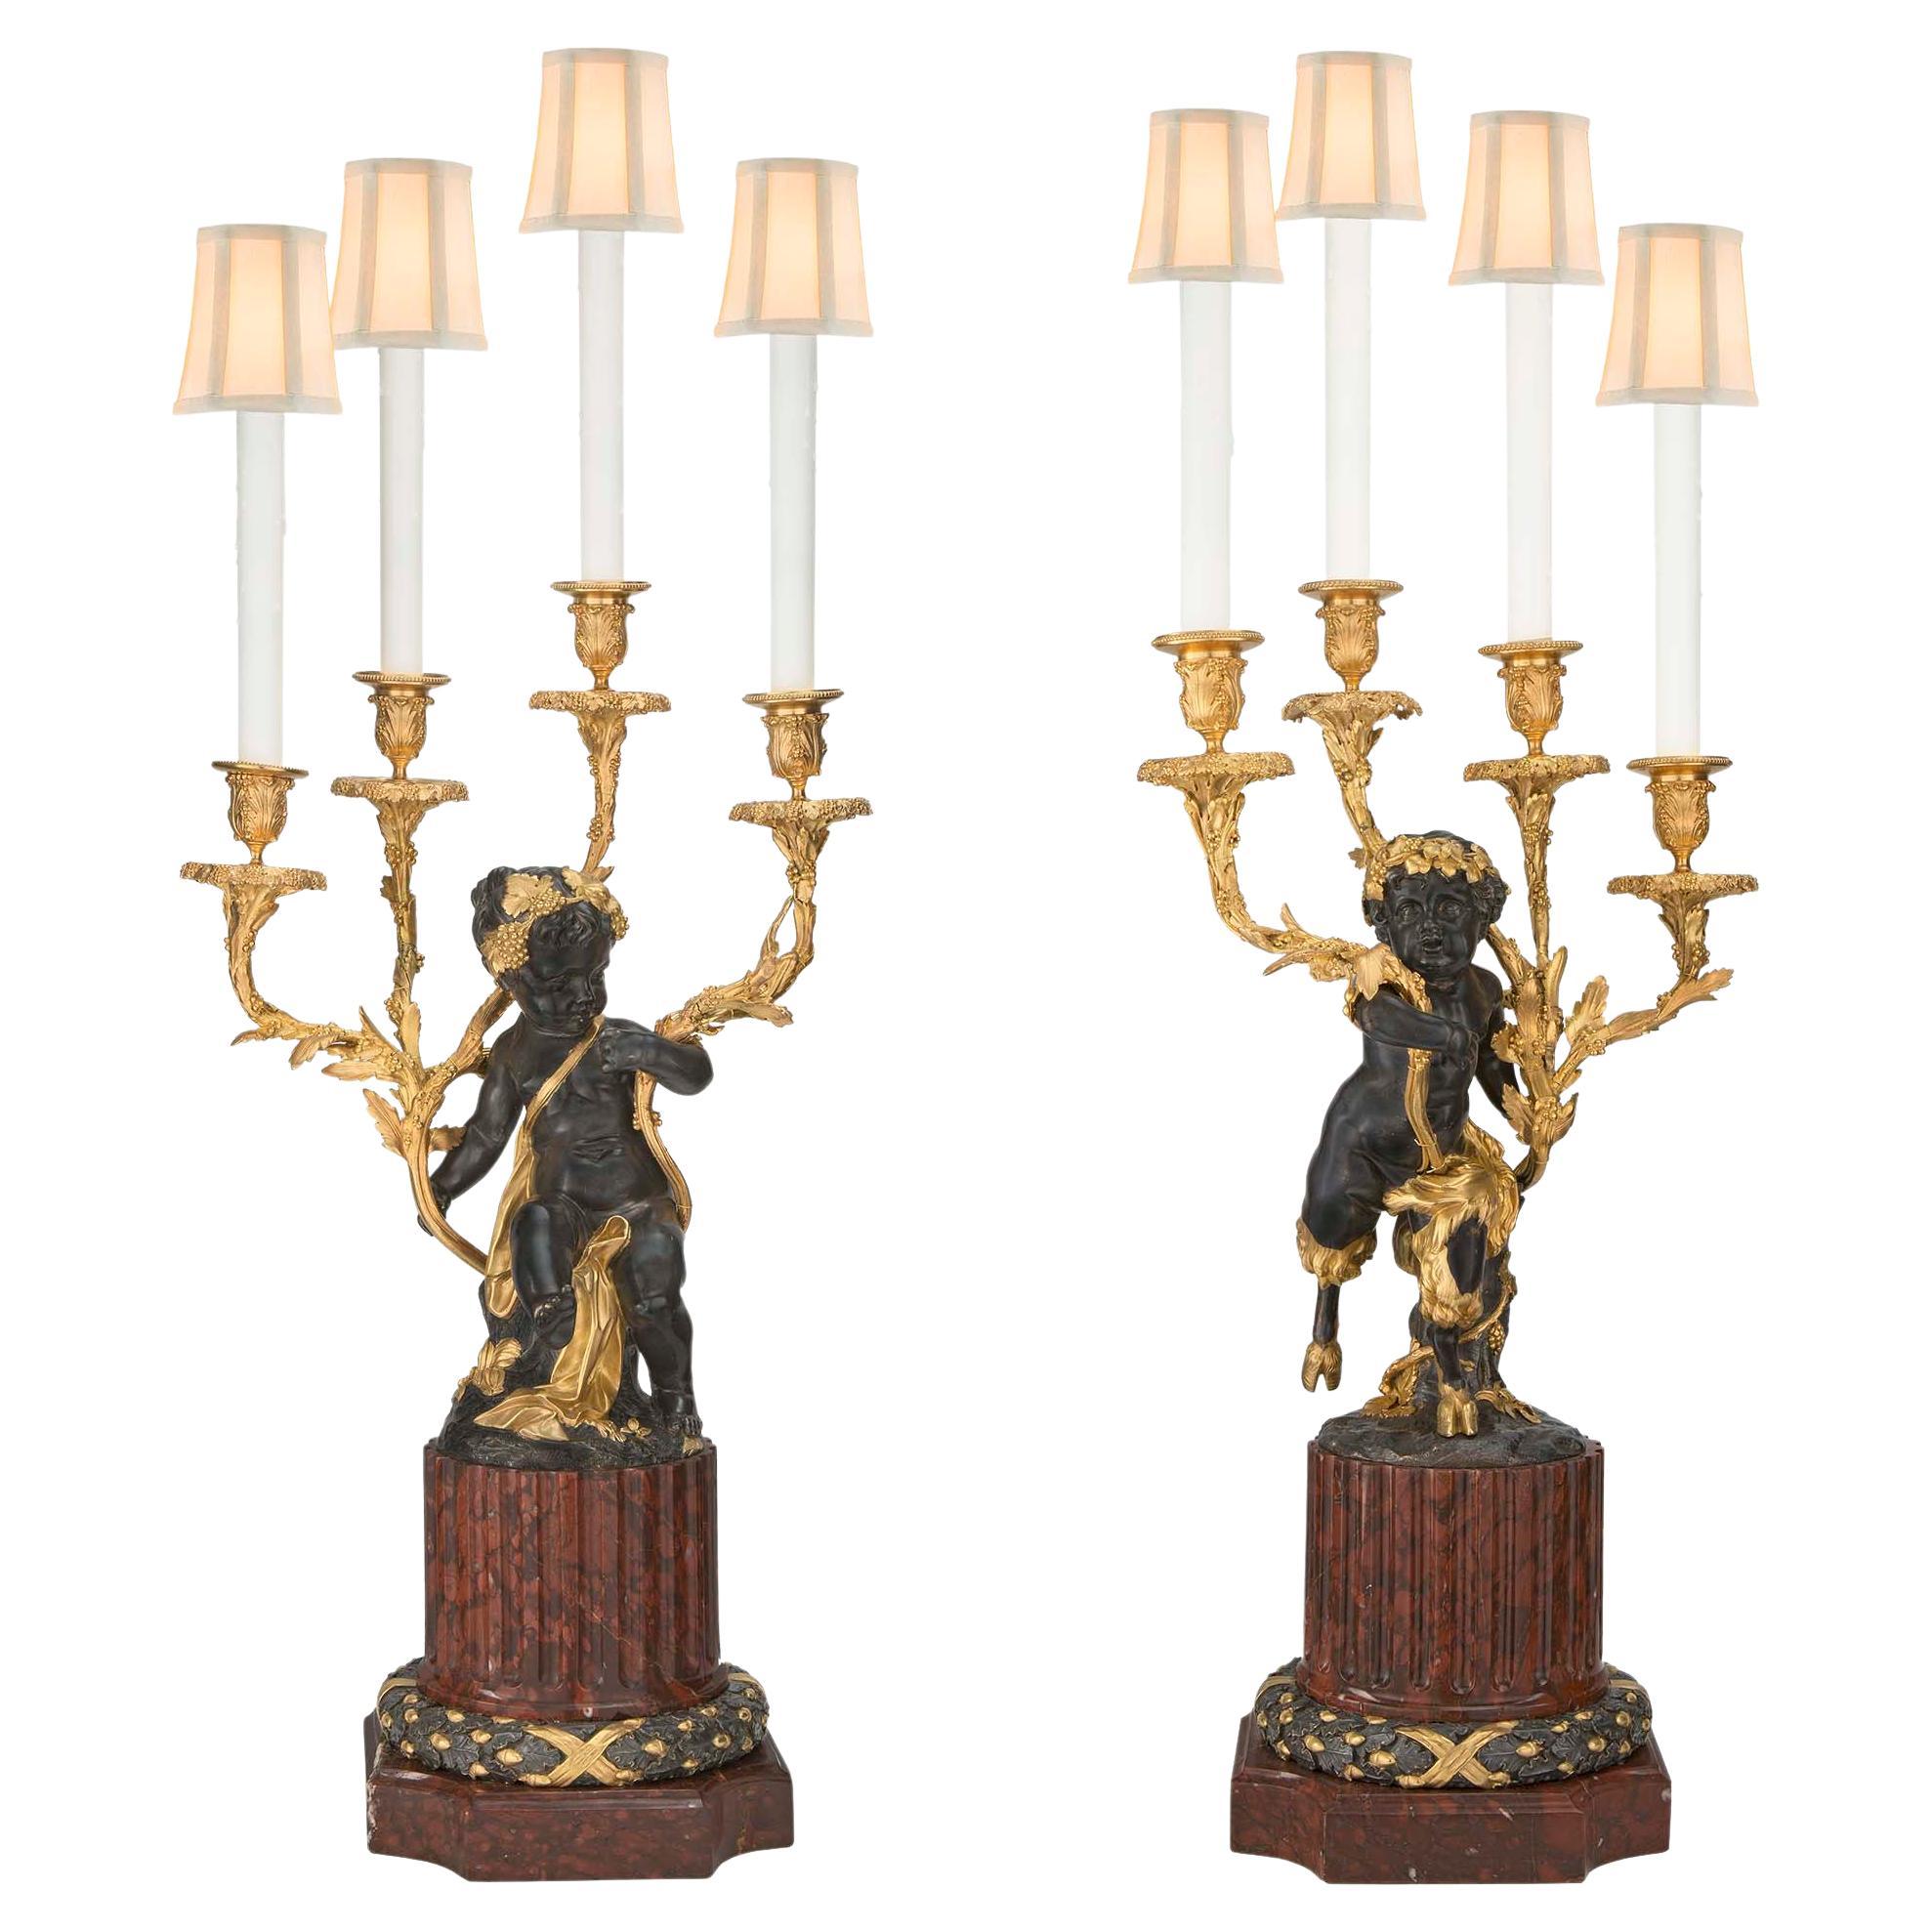 Lampes françaises du XIXe siècle de style Louis XVI en marbre rouge griotte, bronze et bronze doré